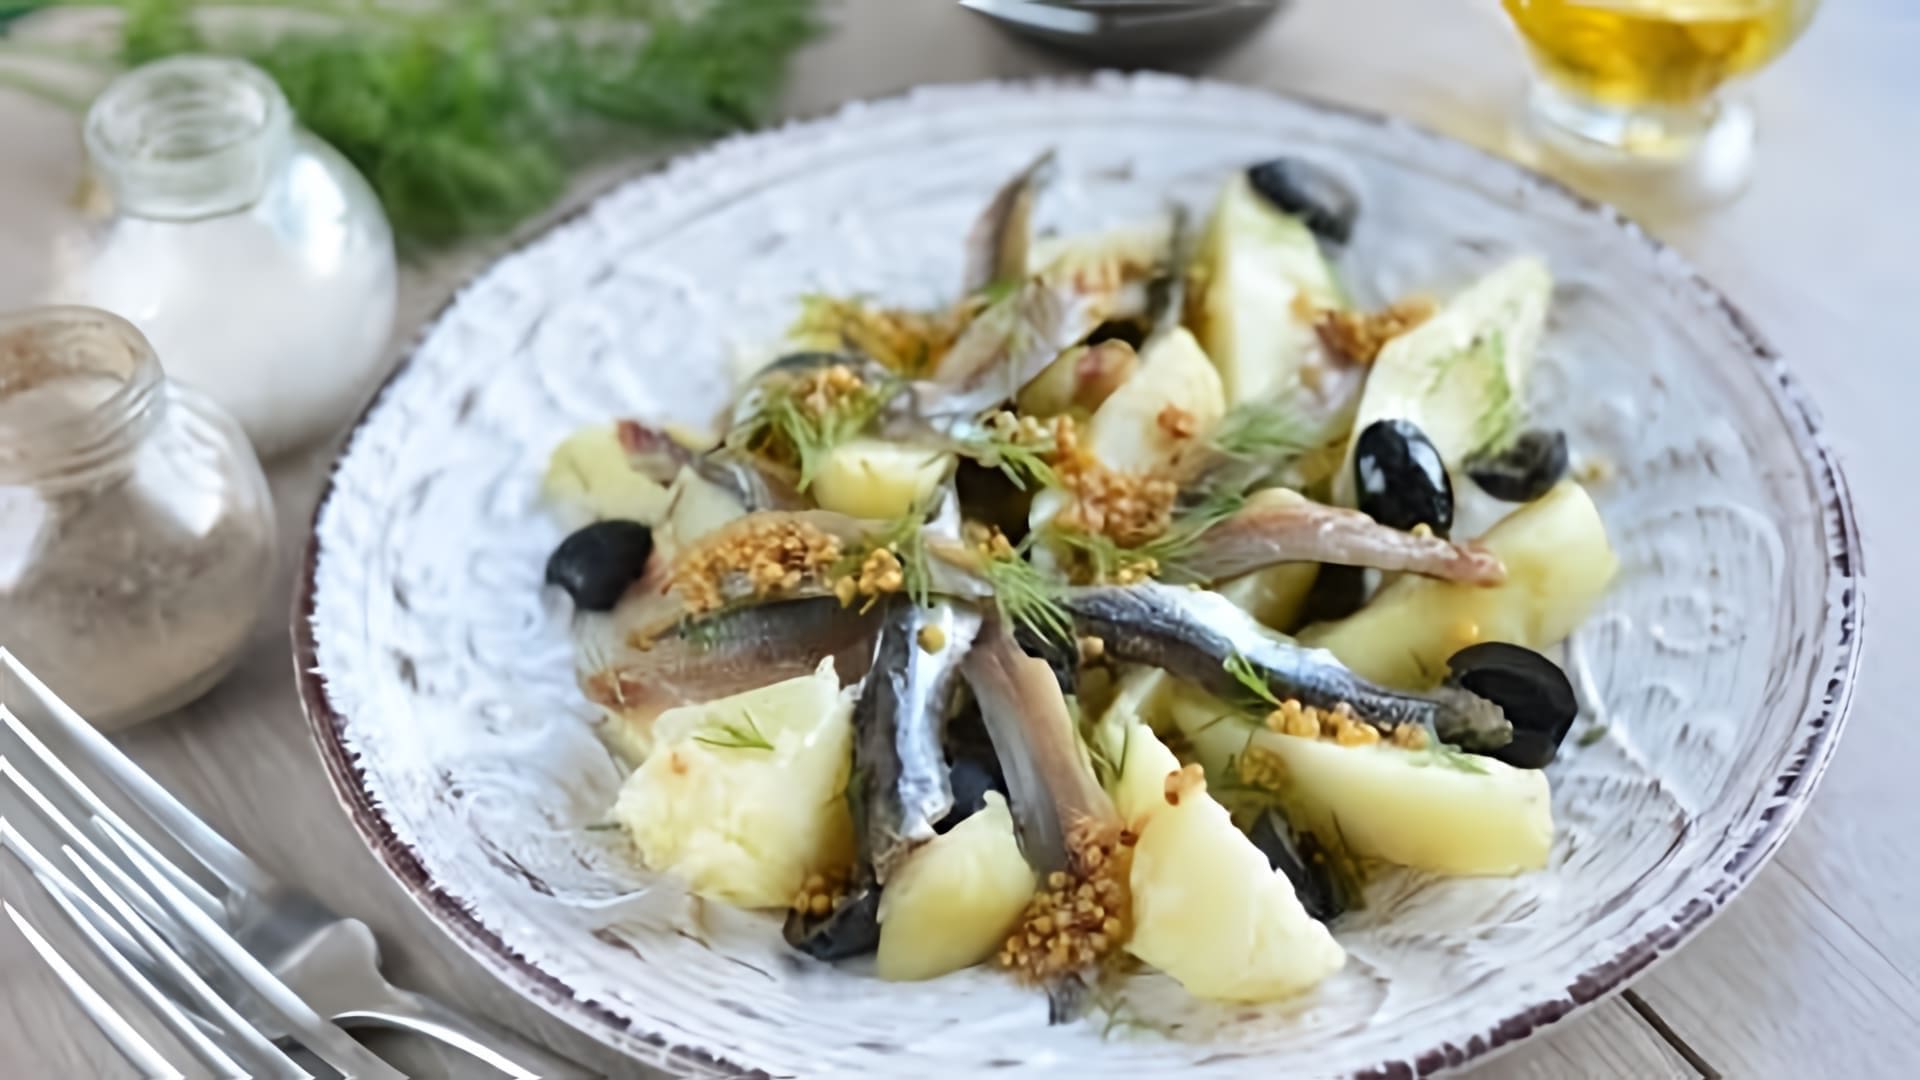 В этом видео демонстрируется рецепт картофельного салата с анчоусами